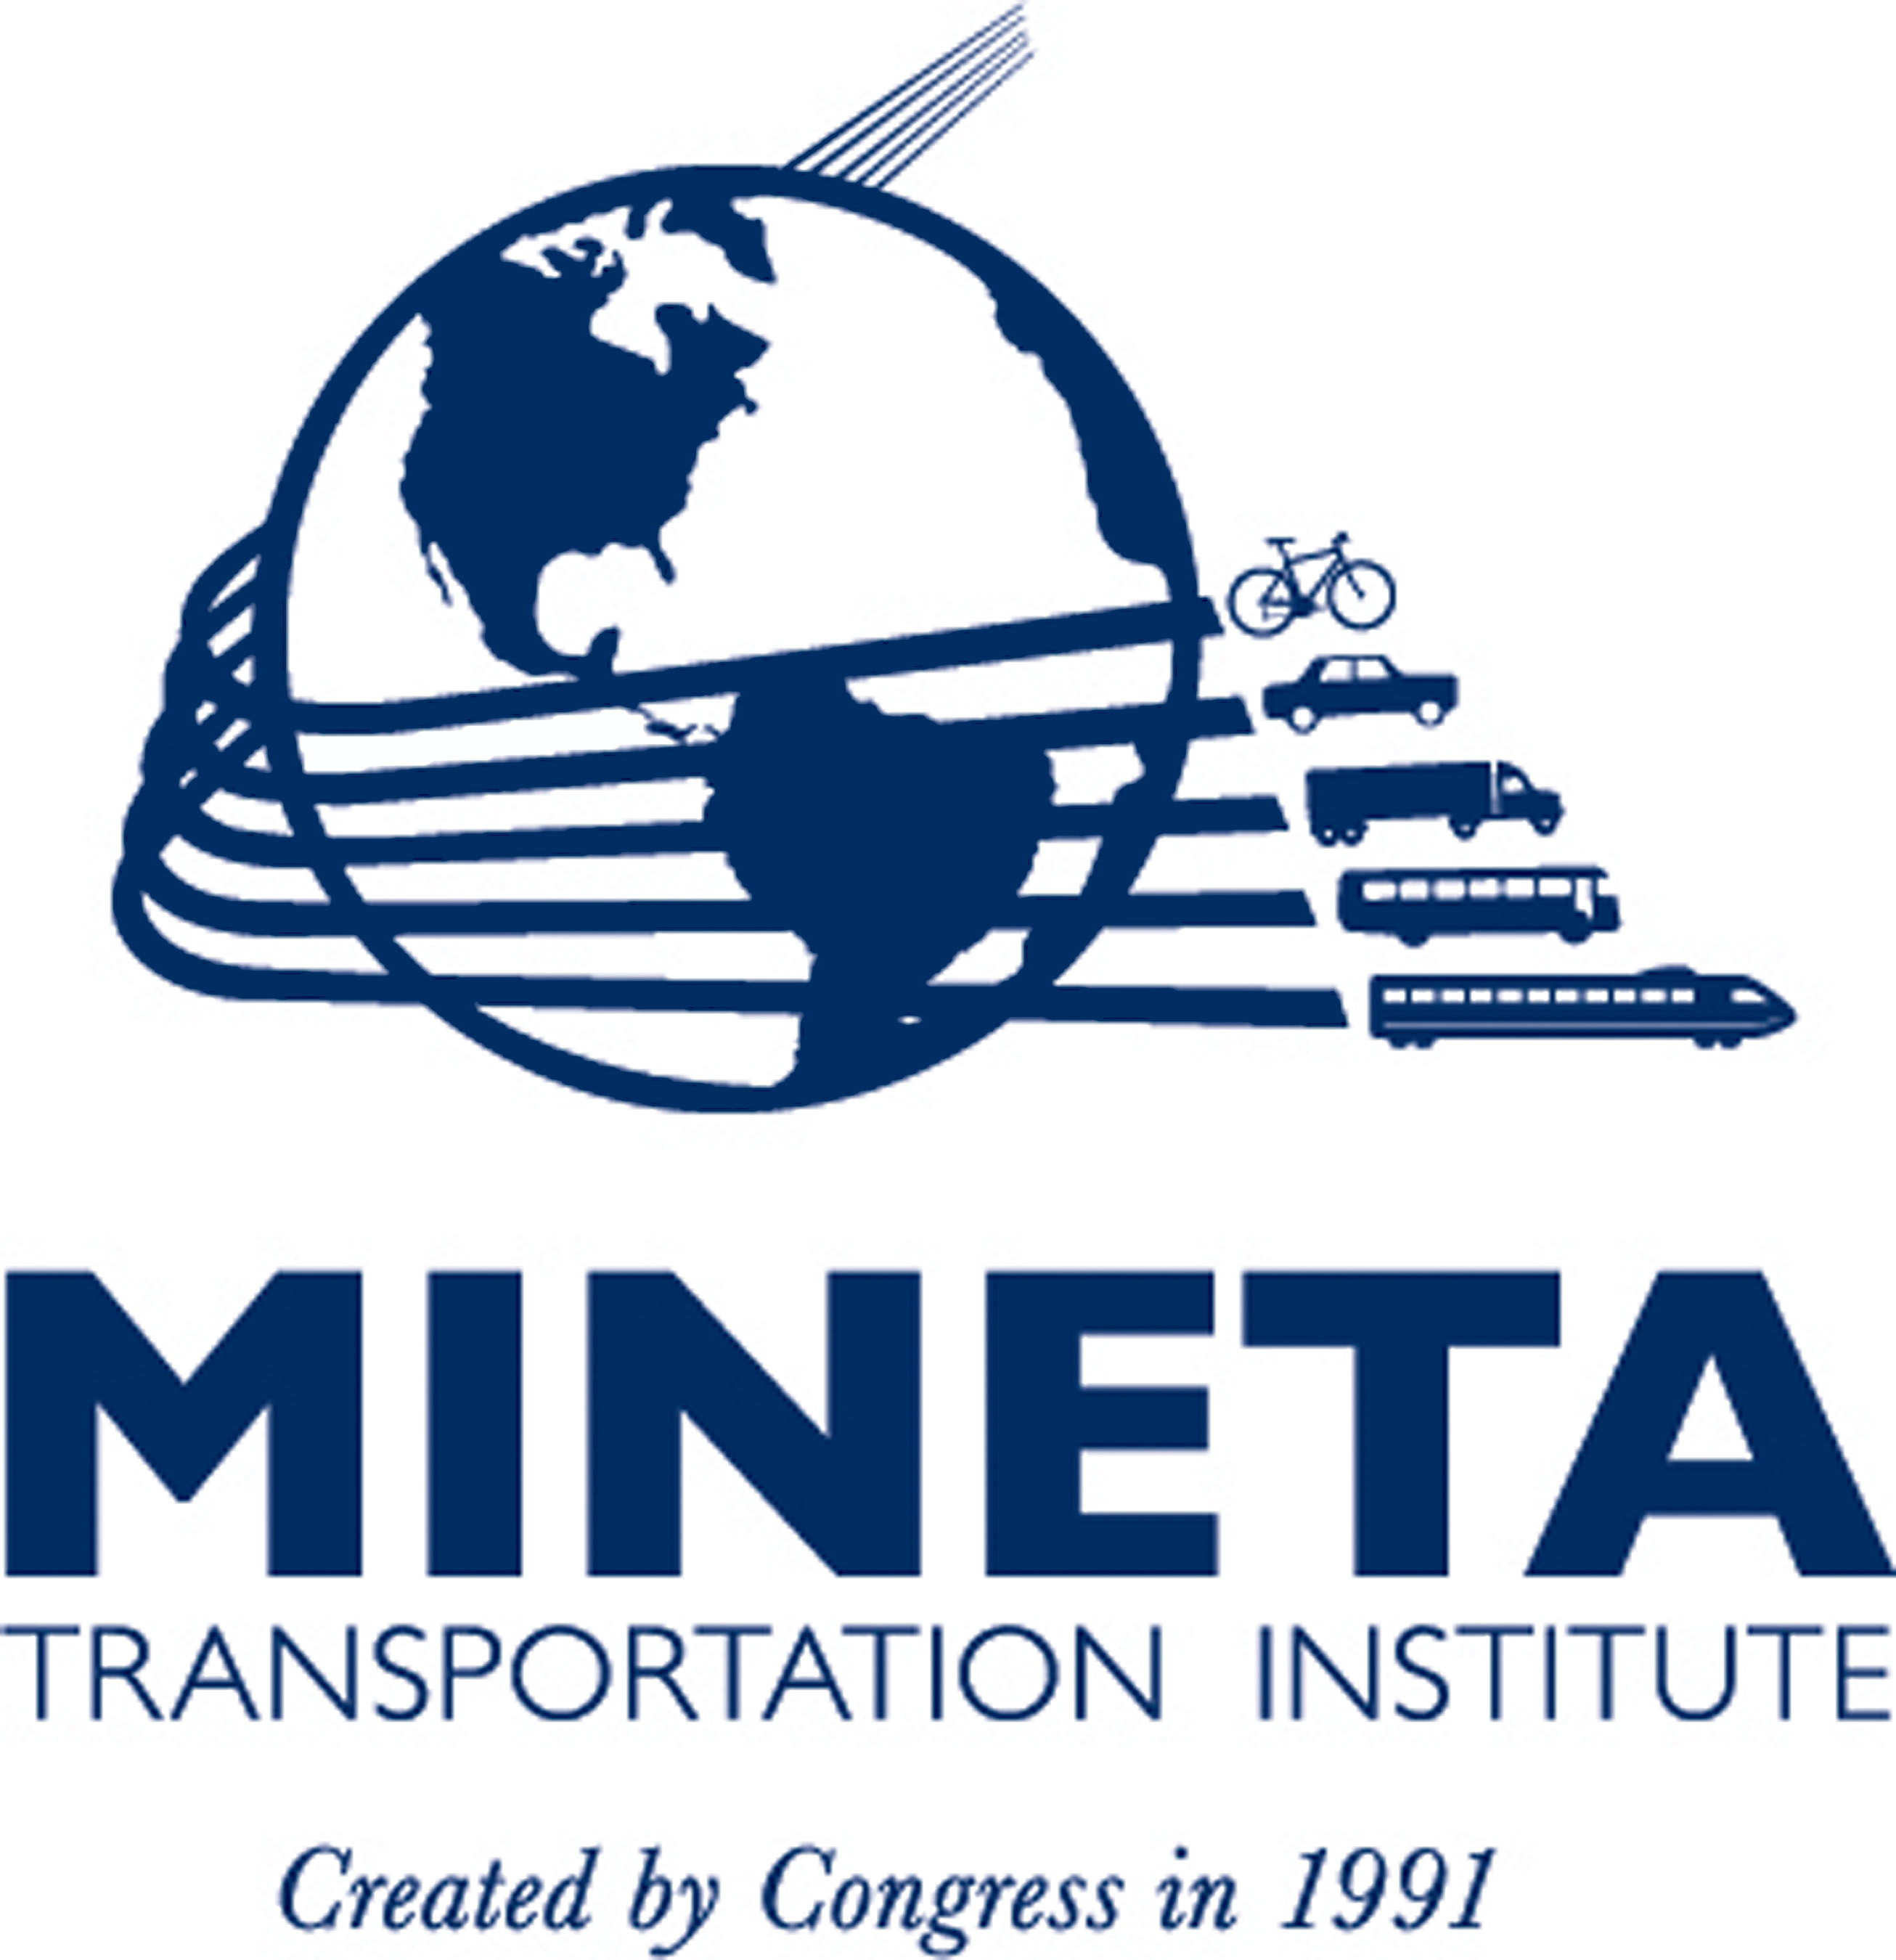 Mineta Transportation Institute. (PRNewsFoto/MINETA TRANSPORTATION INSTITUTE)